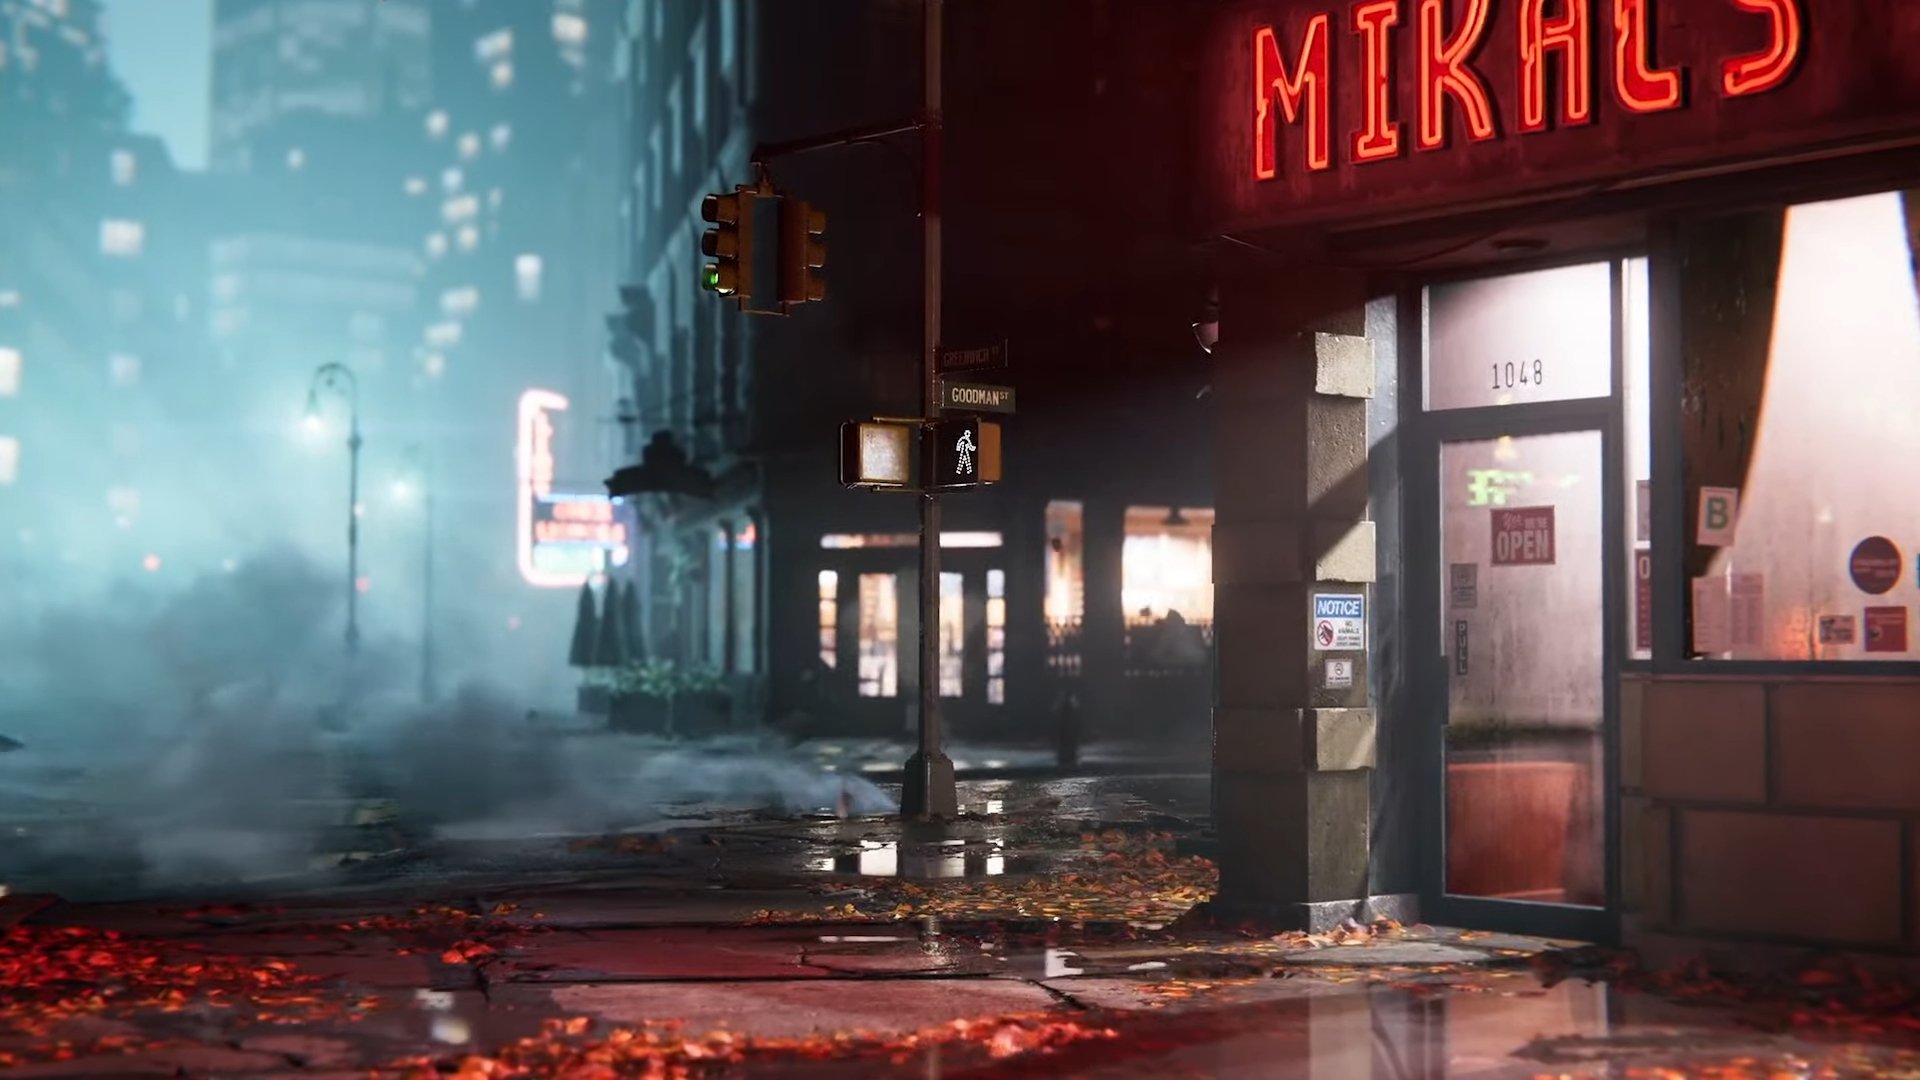 Captura de pantalla del tráiler de Marvel's Spider-Man 2 que muestra una esquina de una calle de Nueva York por la noche, iluminada por farolas y luces dentro de edificios